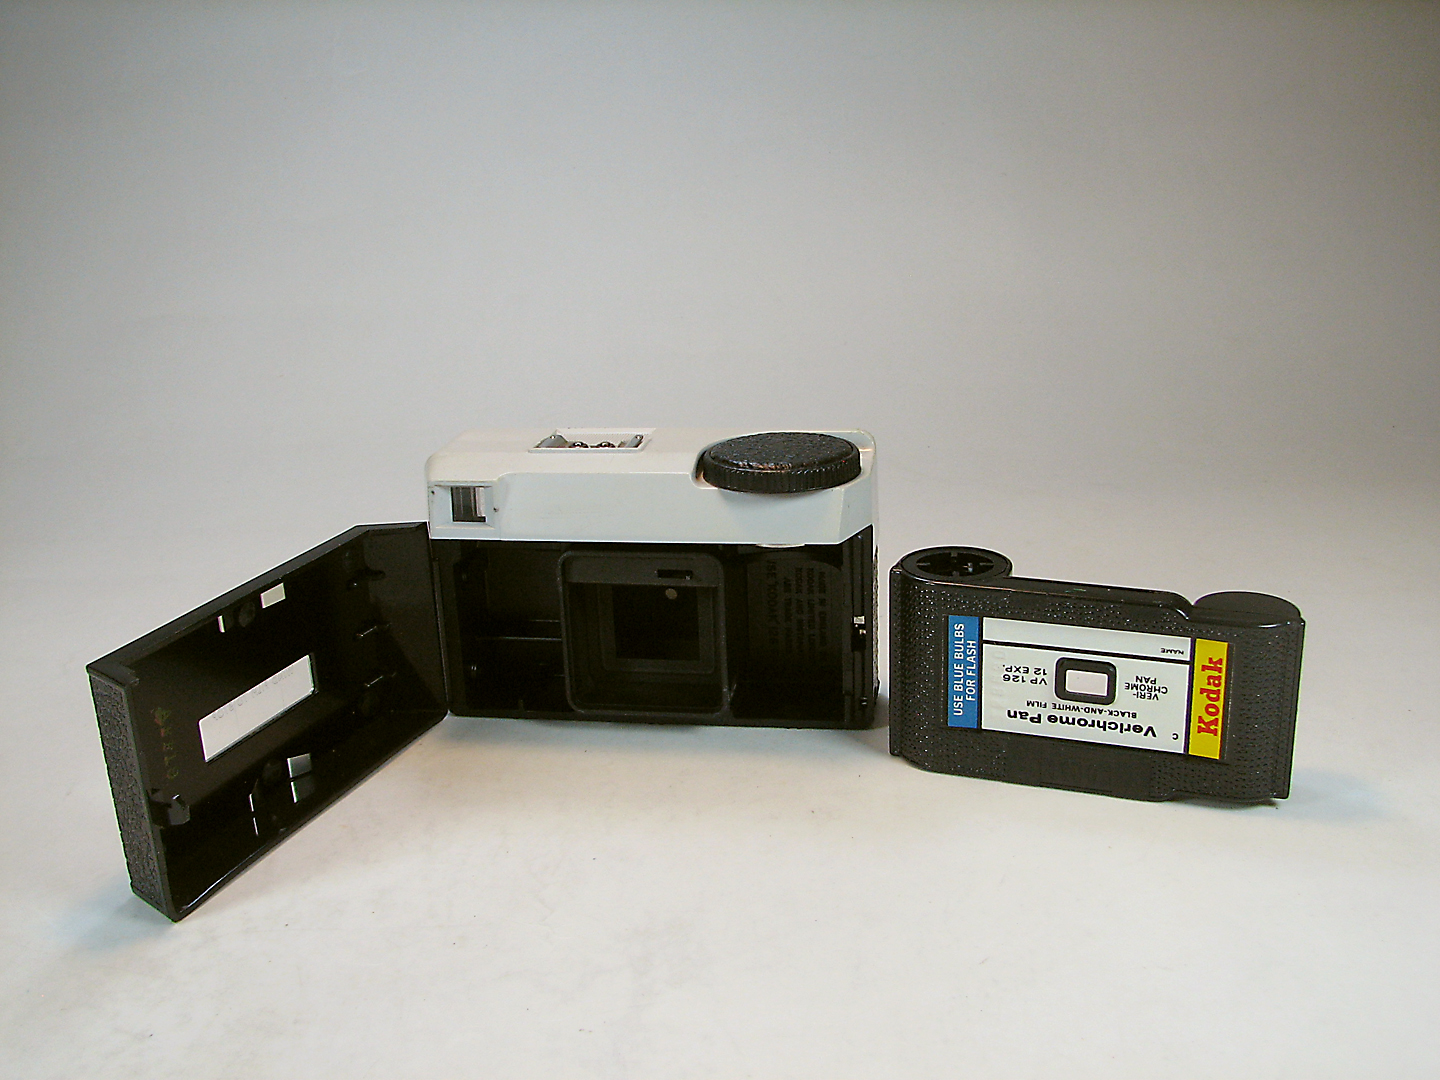 دوربین کلکسیونی کداک Kodak Instamatic 25